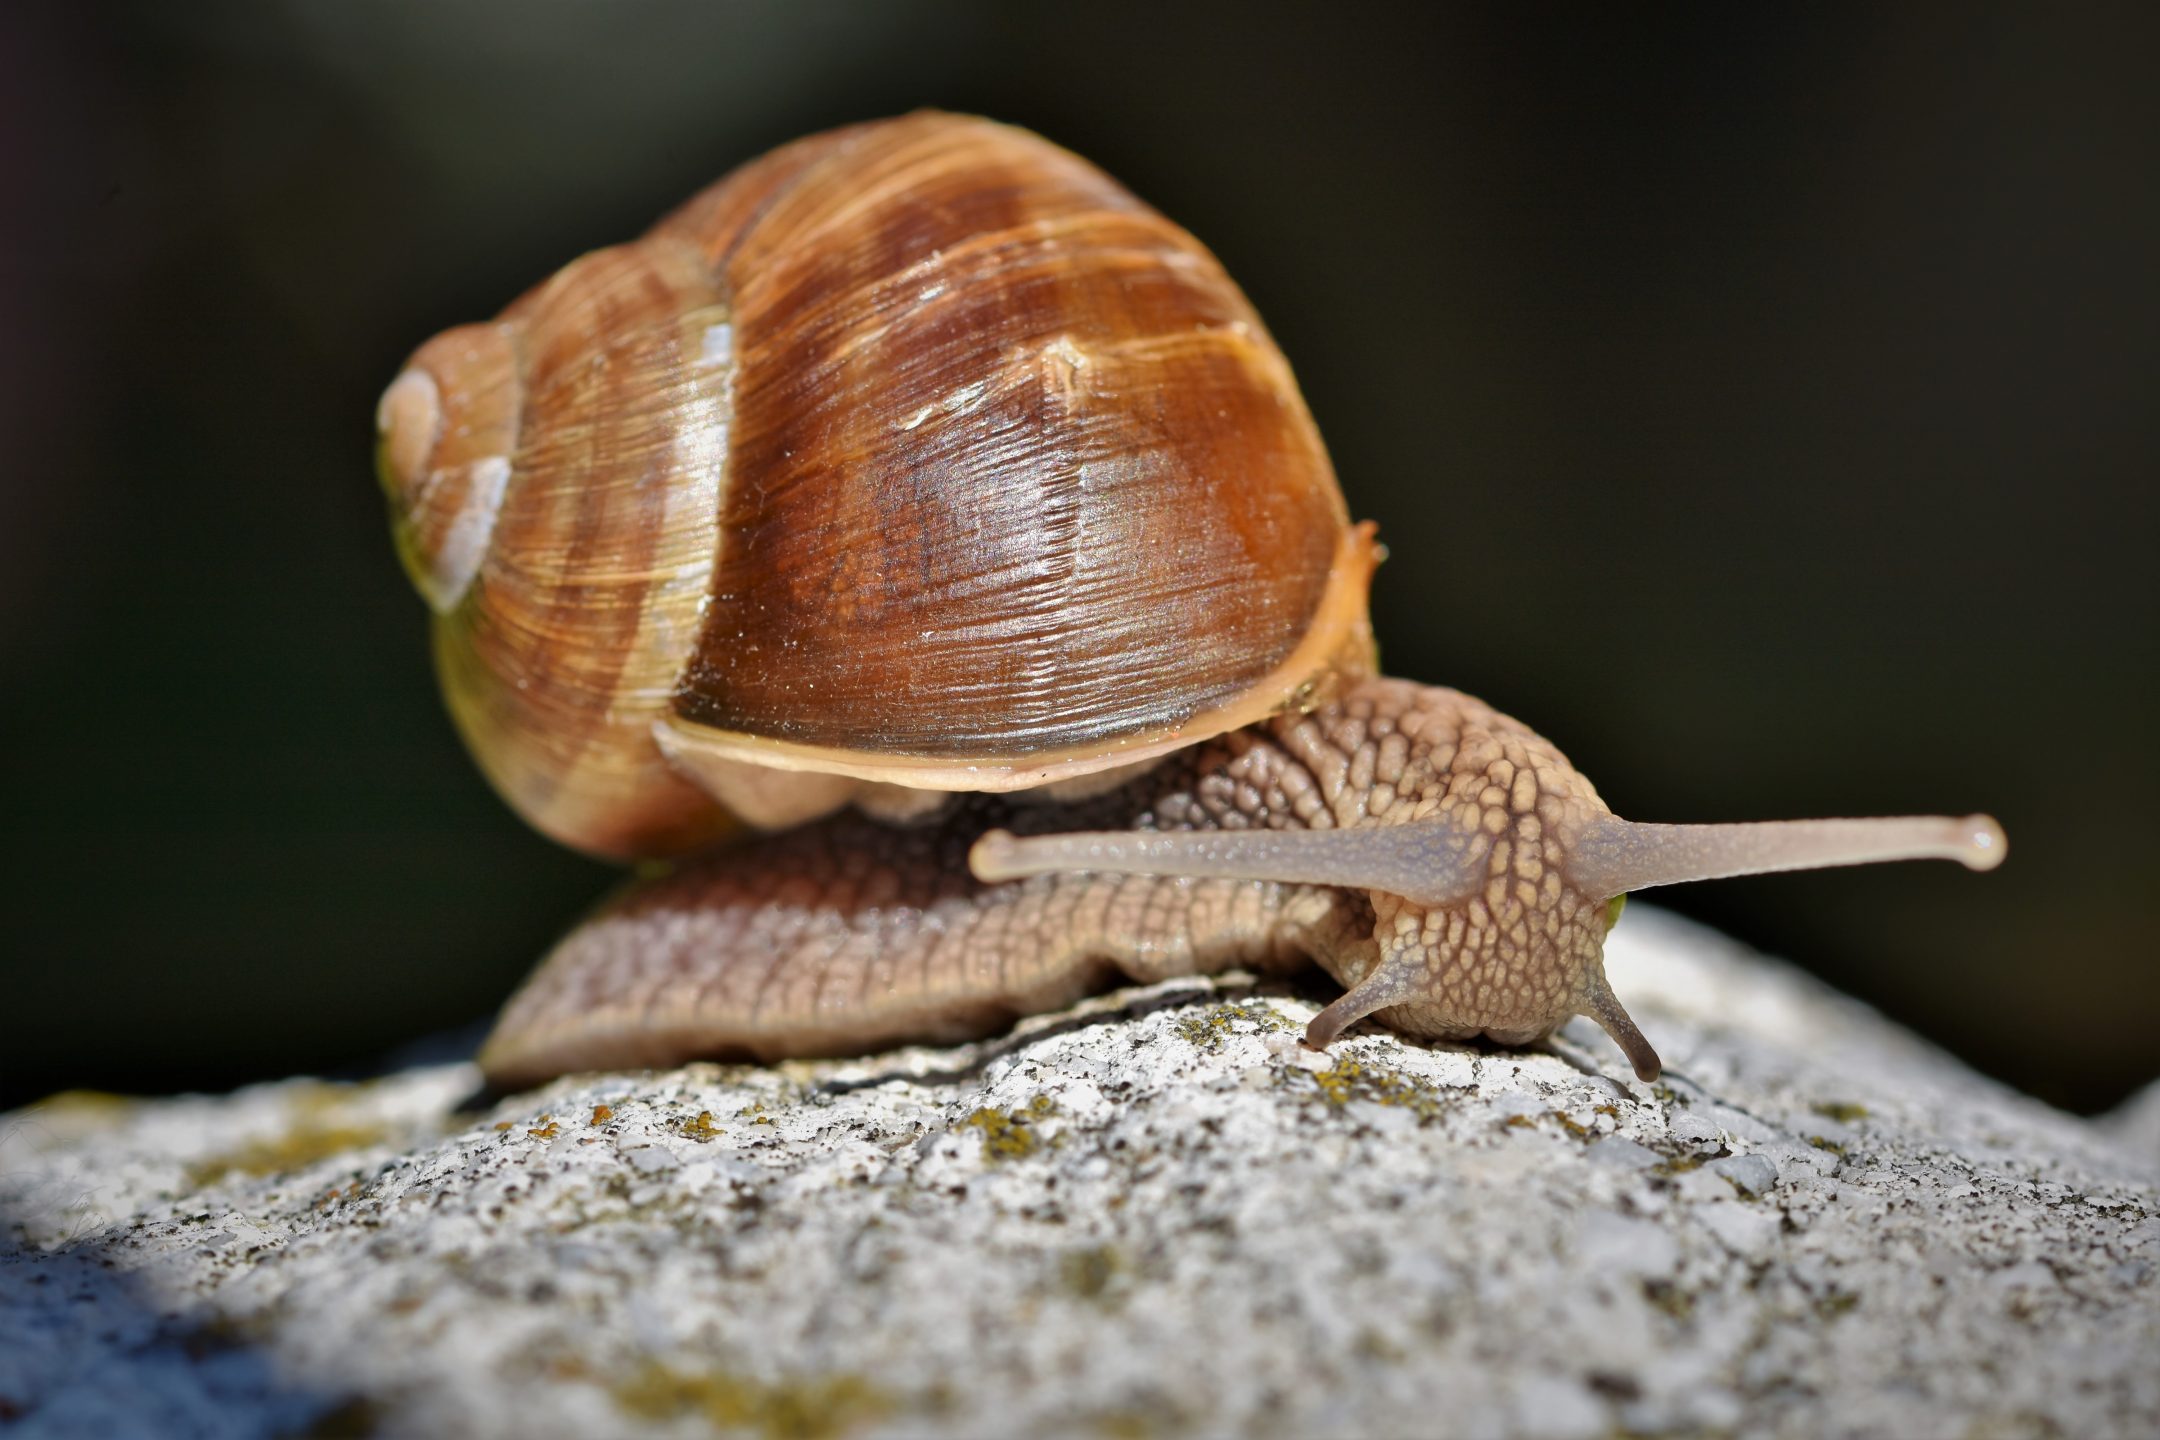 Do snails like heat?